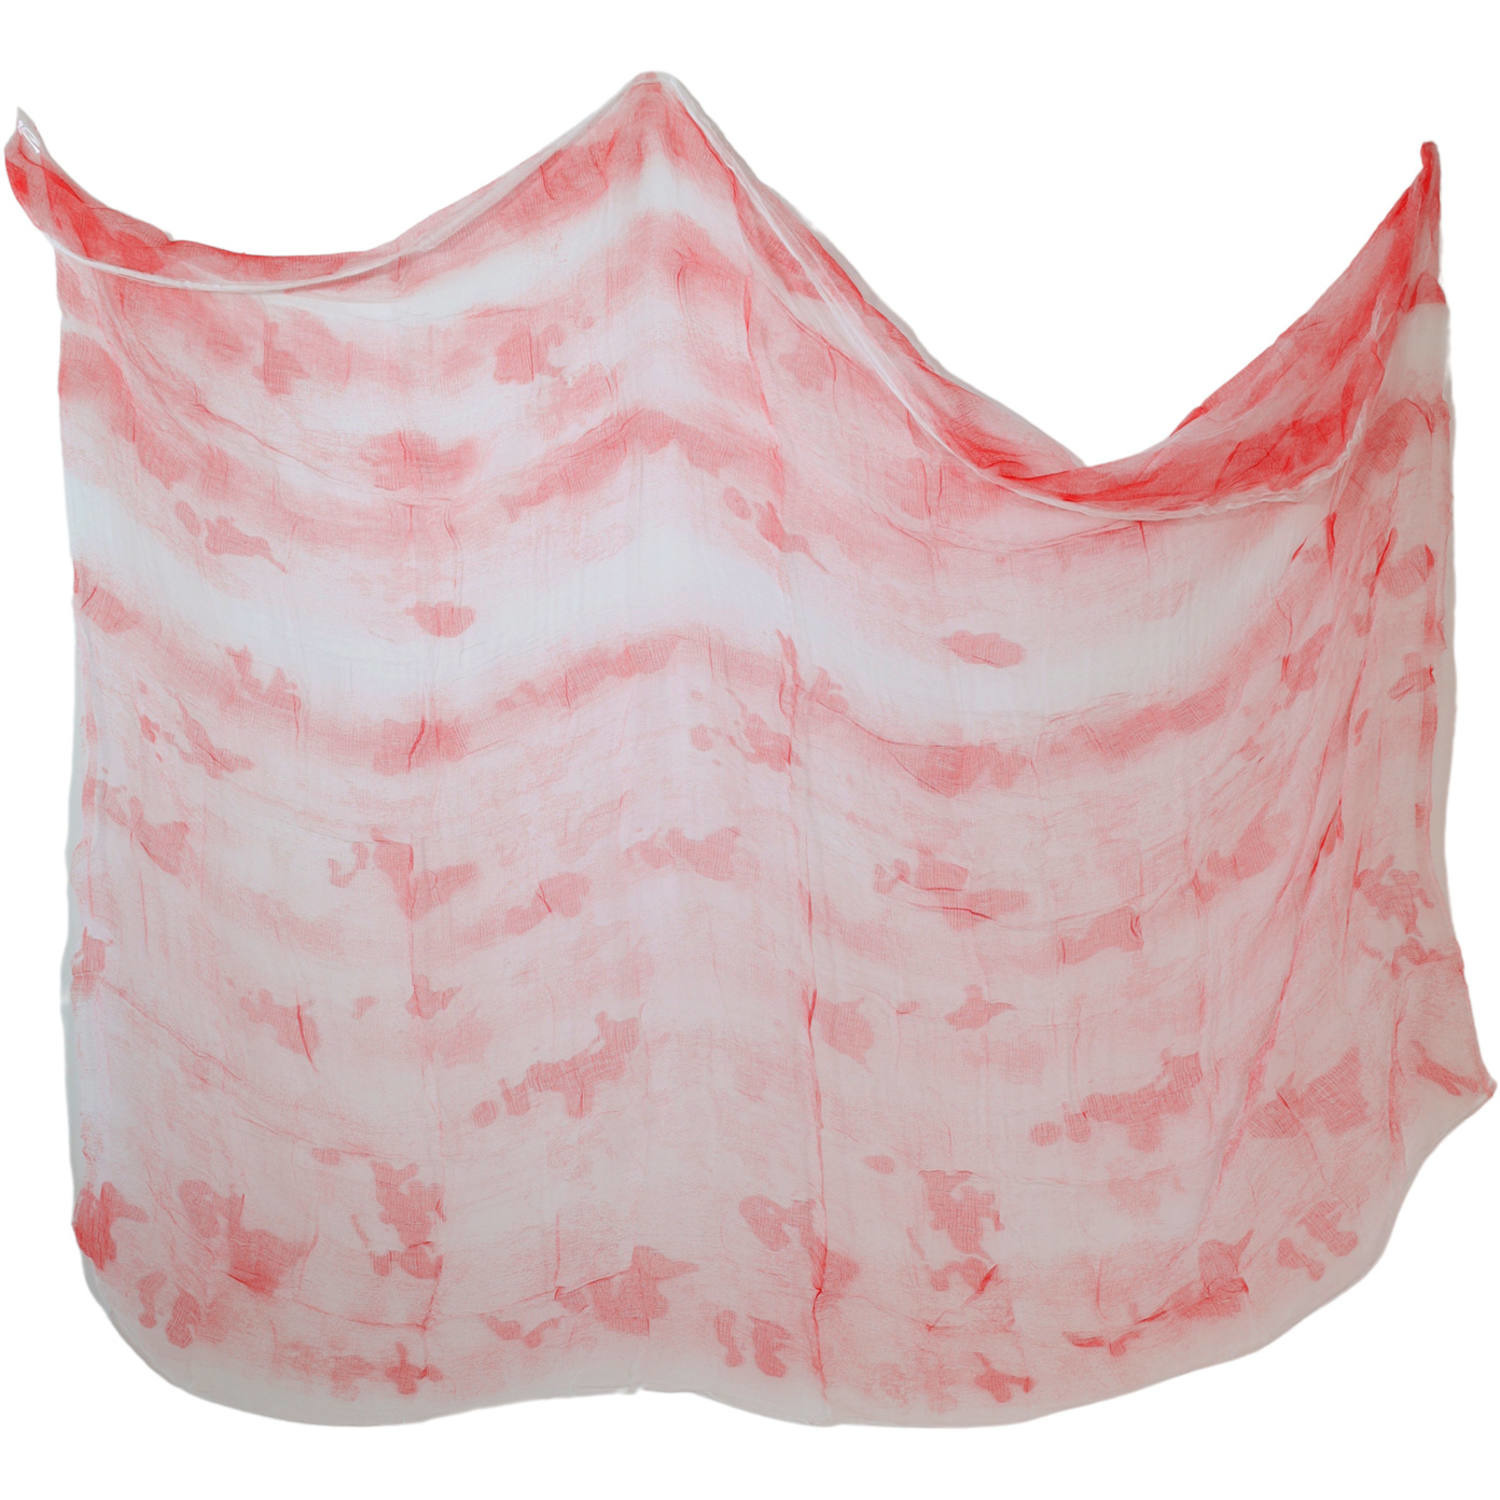 2x Decoratie laken-doek-kleed met bloed 200 x 250 cm